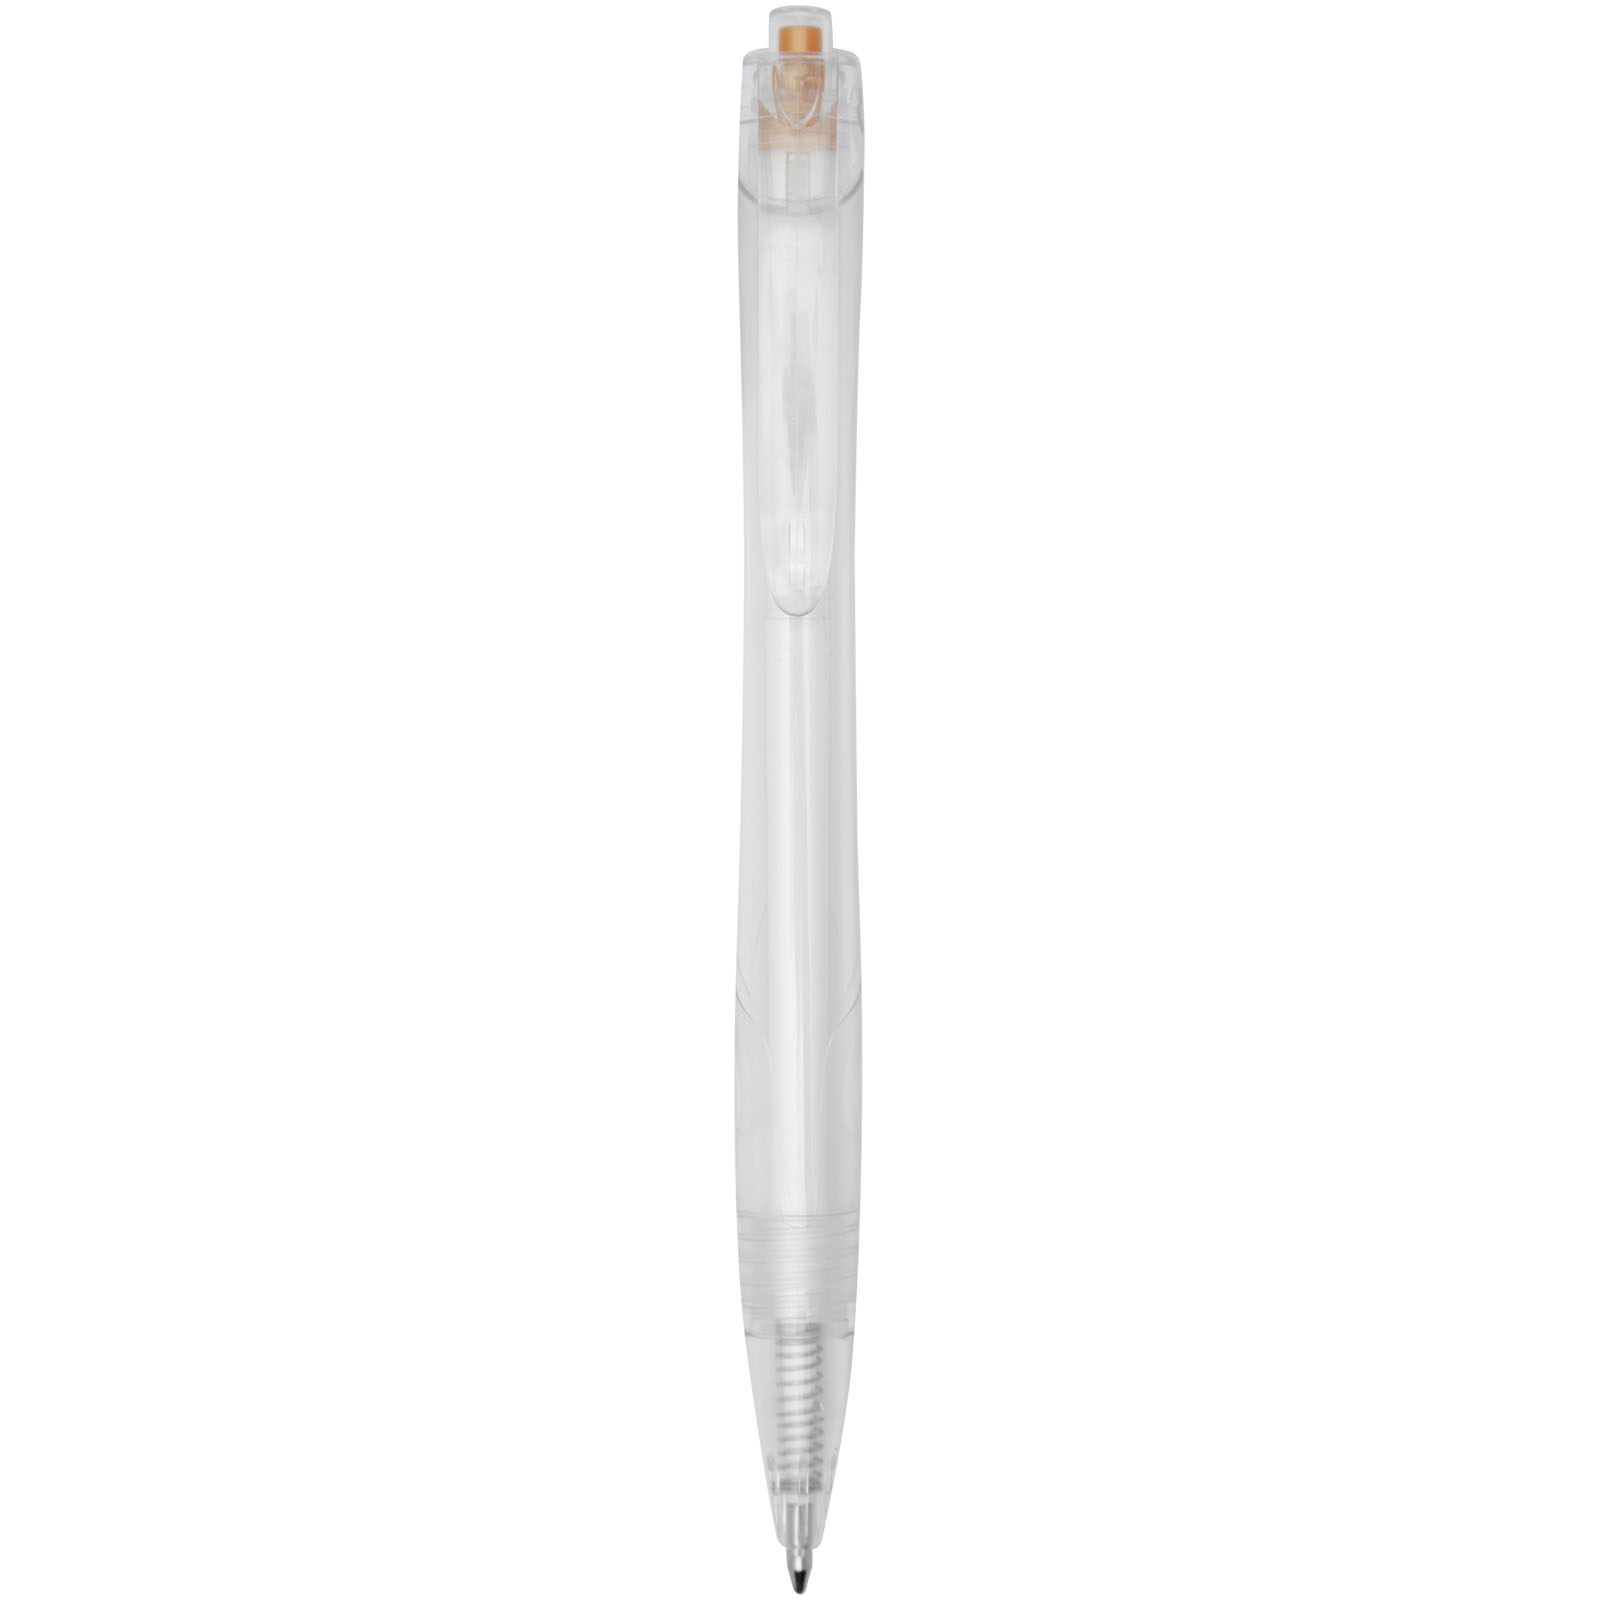 Advertising Ballpoint Pens - Honua recycled PET ballpoint pen 